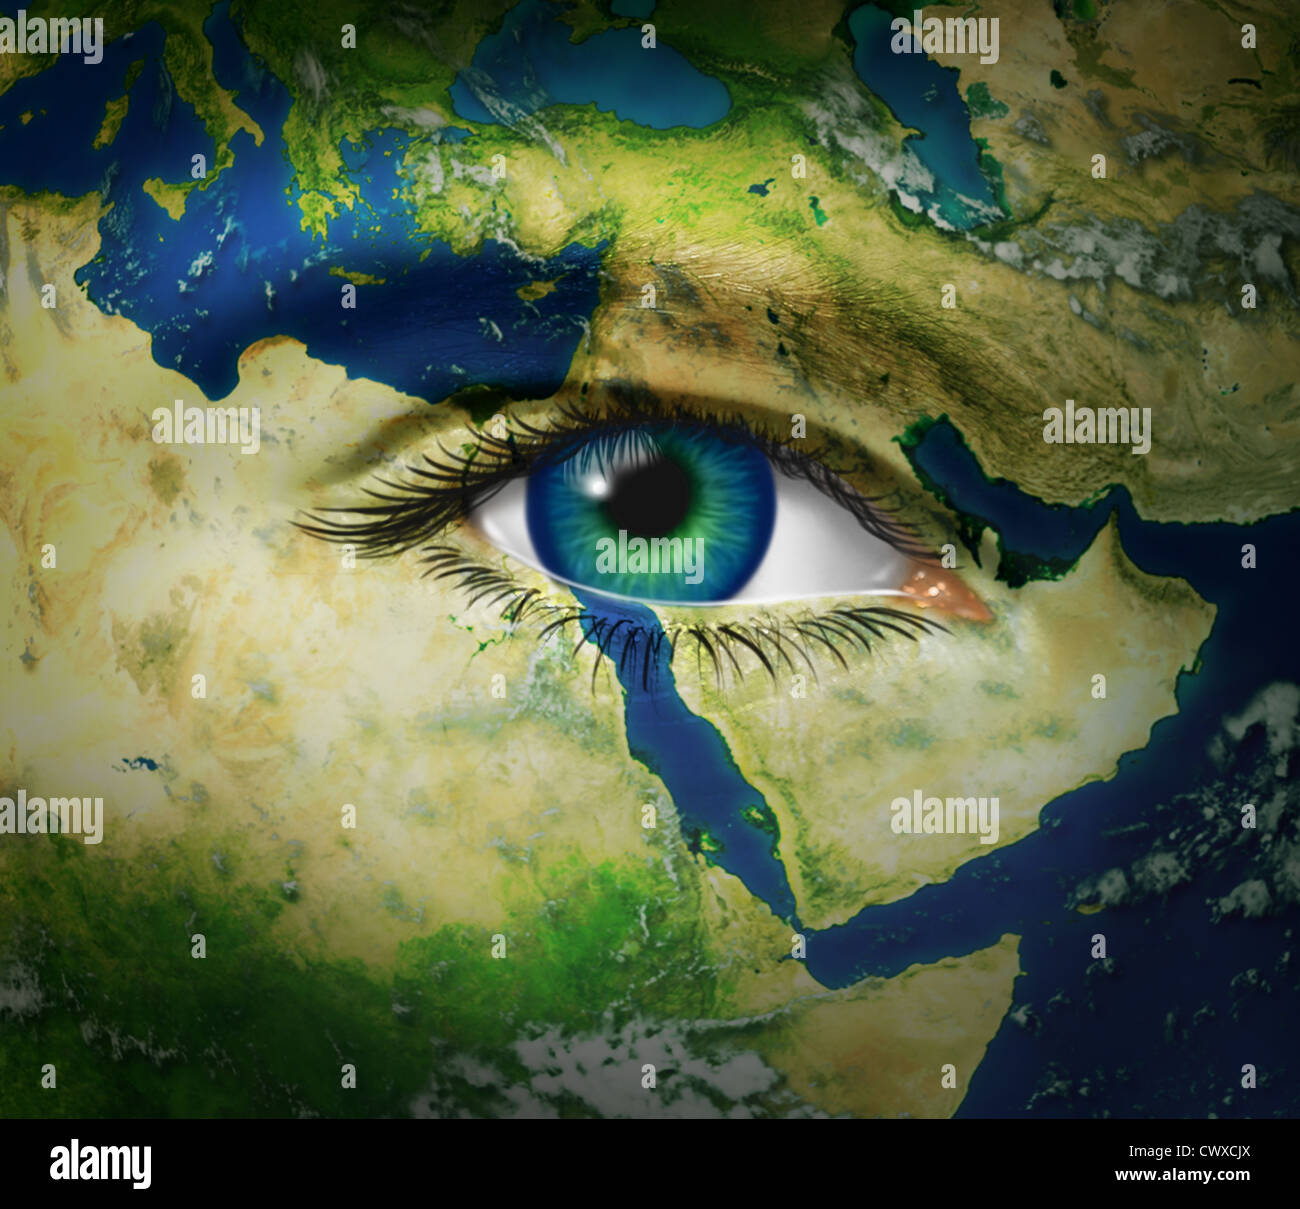 Oriente Medio noticias y eventos de notificación de focos de disturbios árabes y la revolución con el mapa y el ojo humano durante la revuelta de Foto de stock